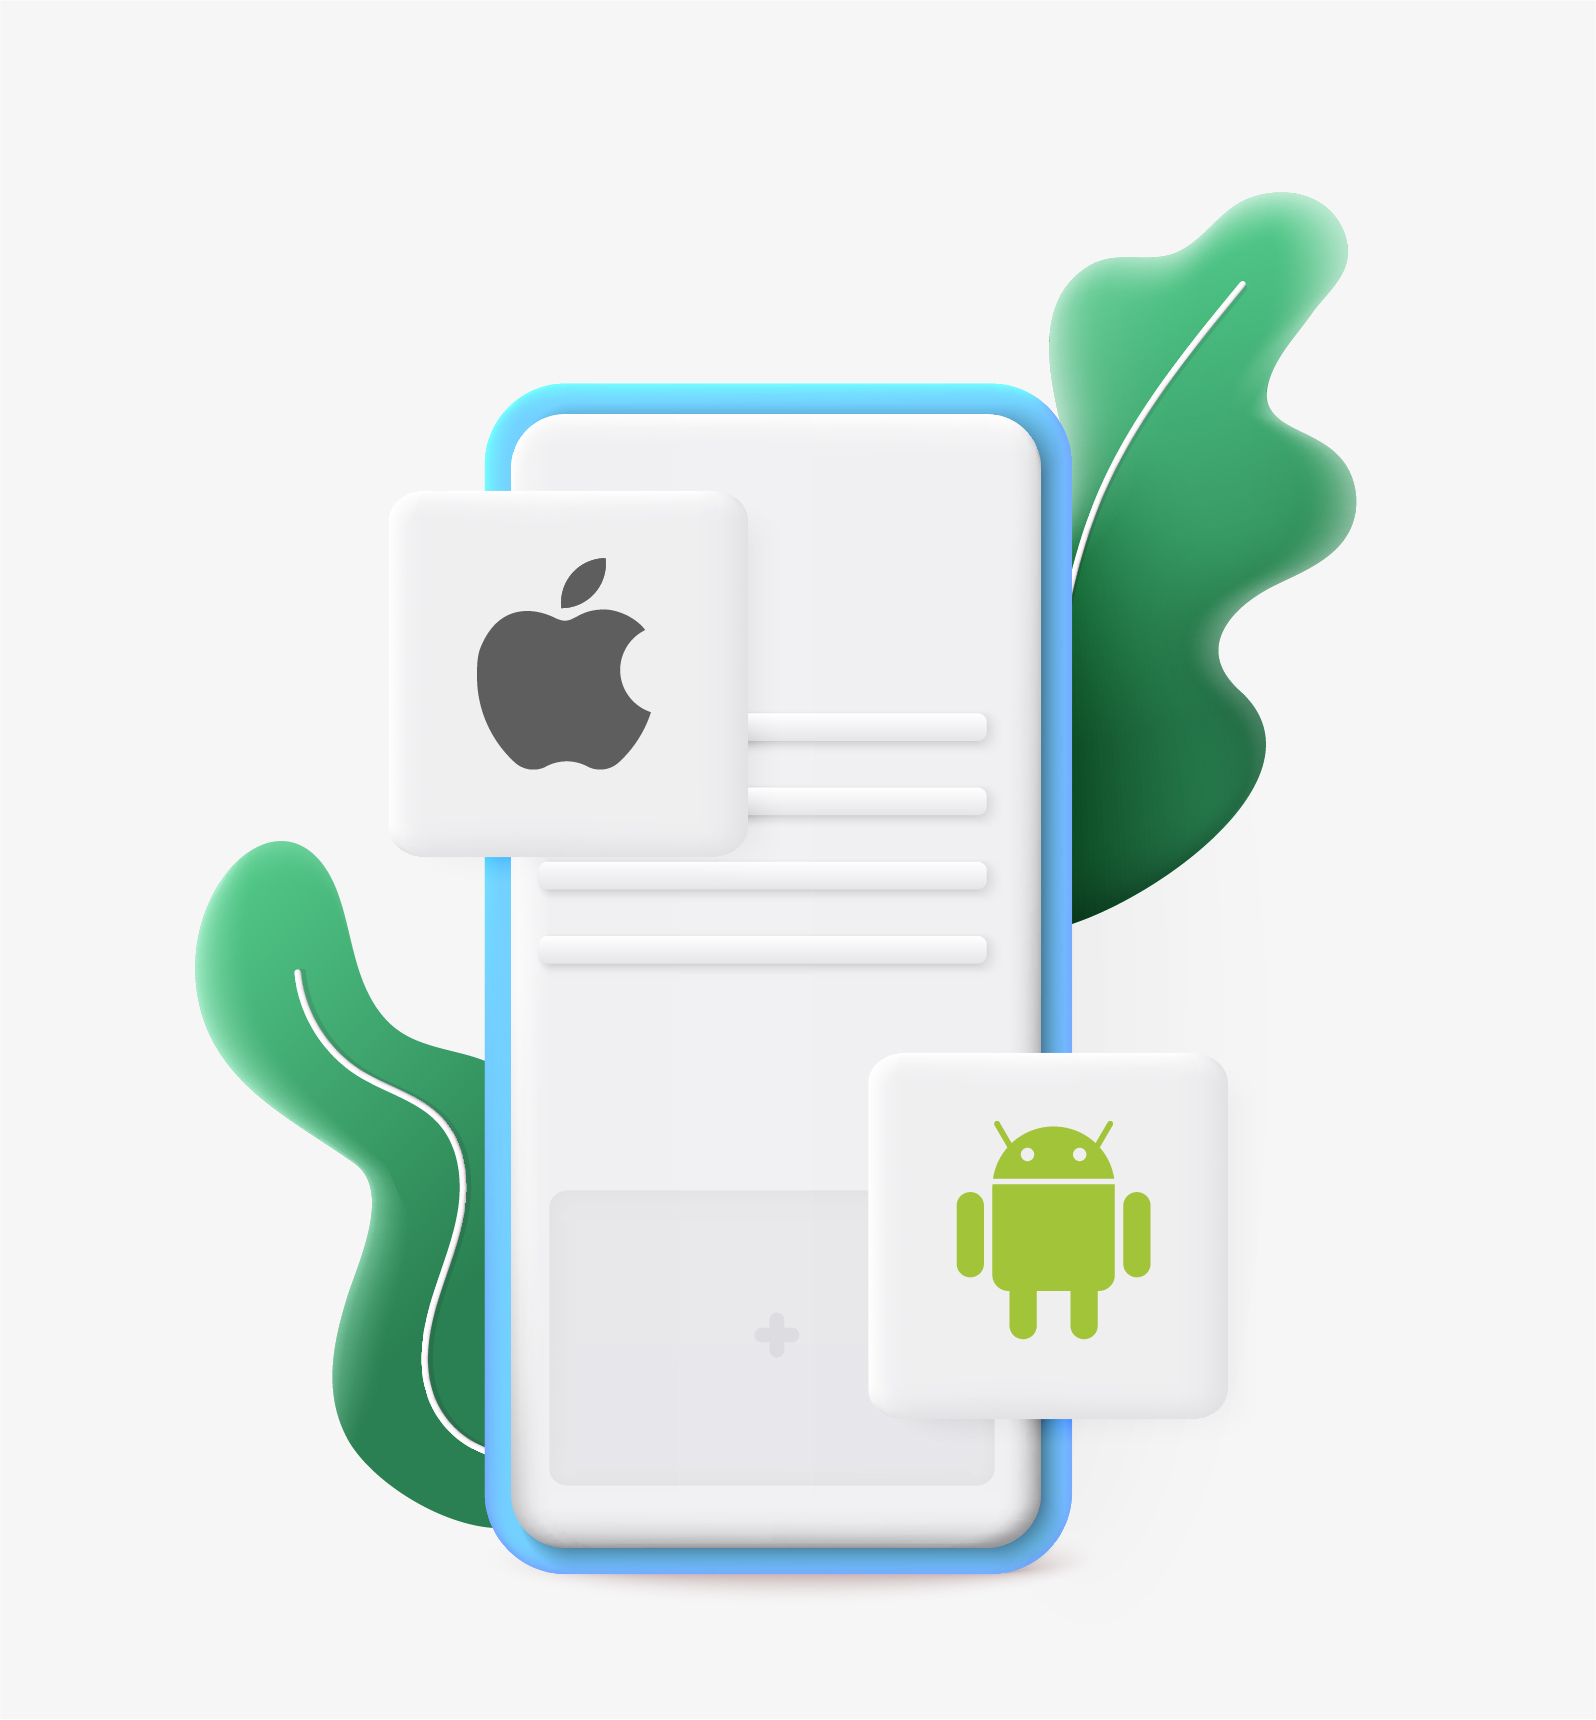 Qsmart - développement d'appli mobile native iOS & Android